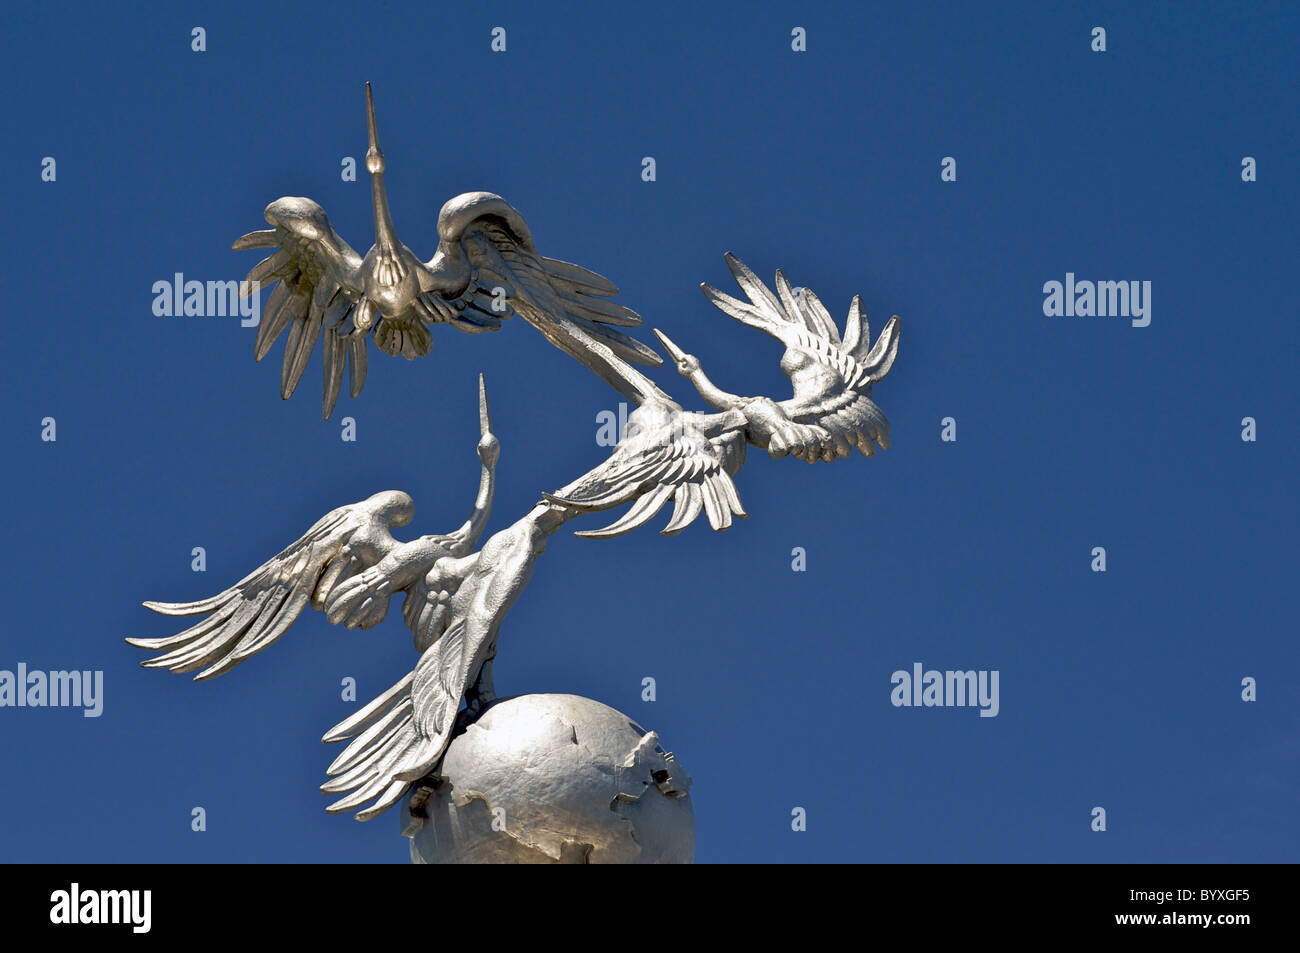 Ezgulik decorated archway, Mustakillik or Independence Square. Storks taking flight. Tashkent, Uzbekistan Stock Photo